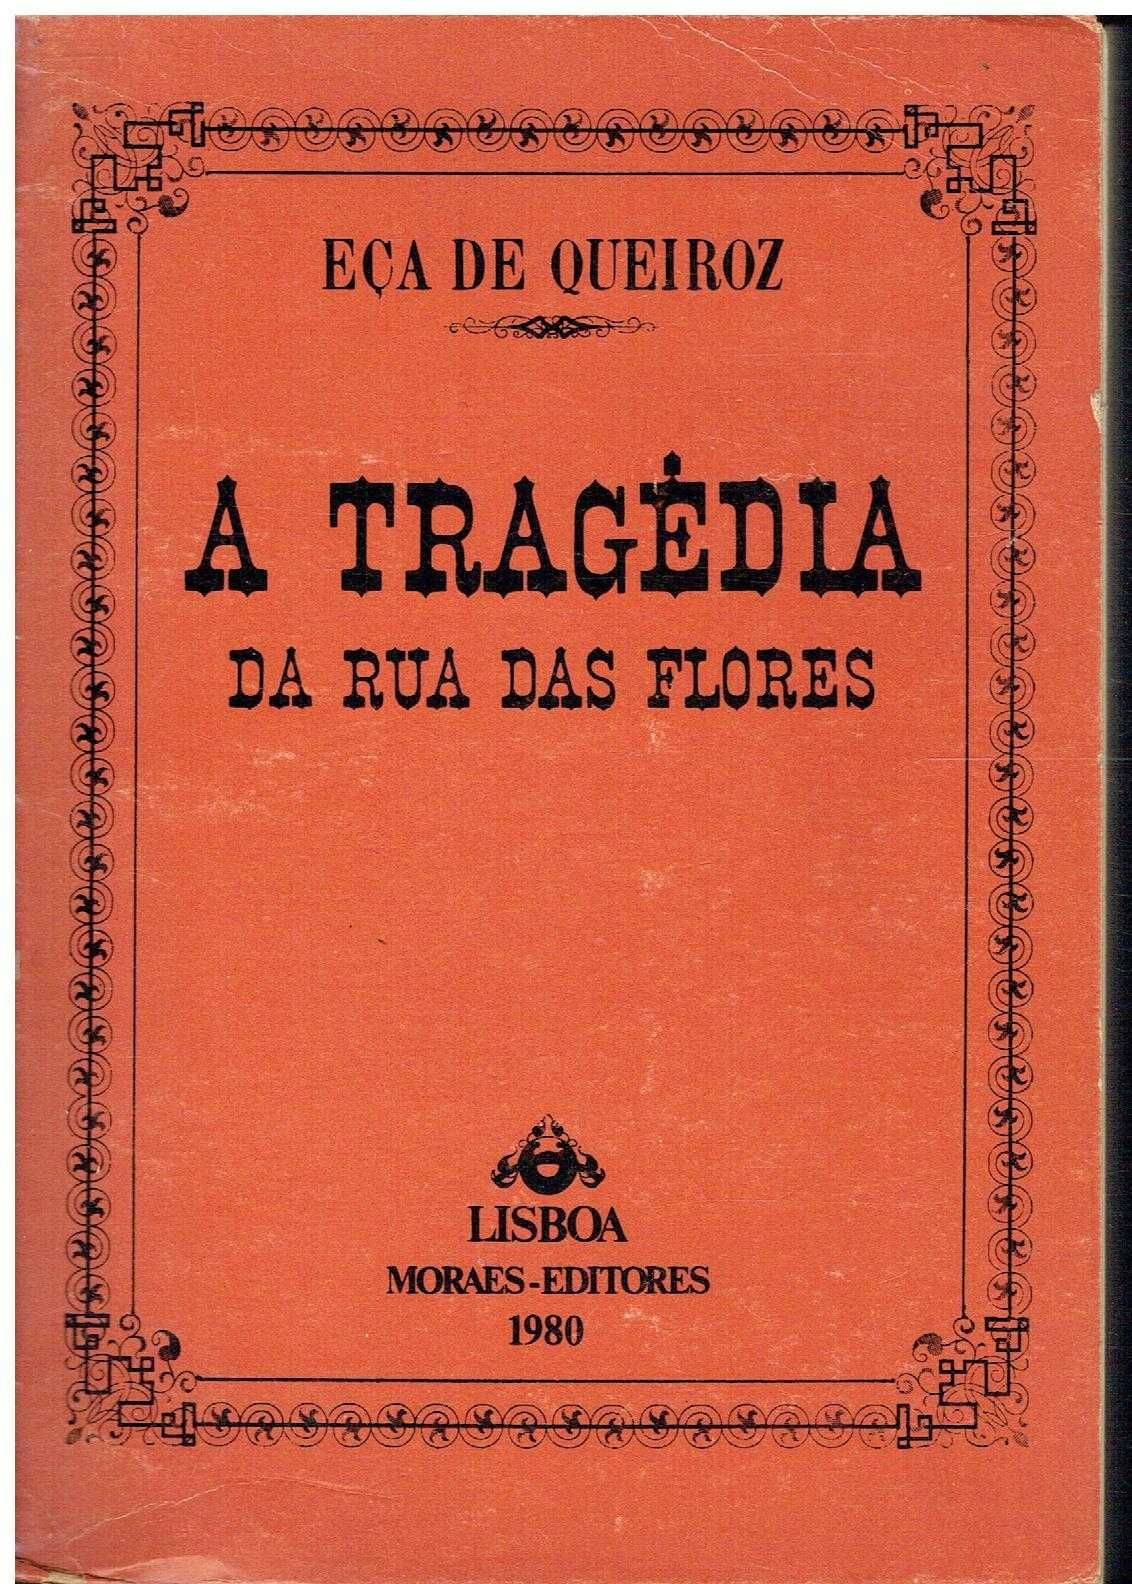 9668

Livros de Eça de Queiróz - 2